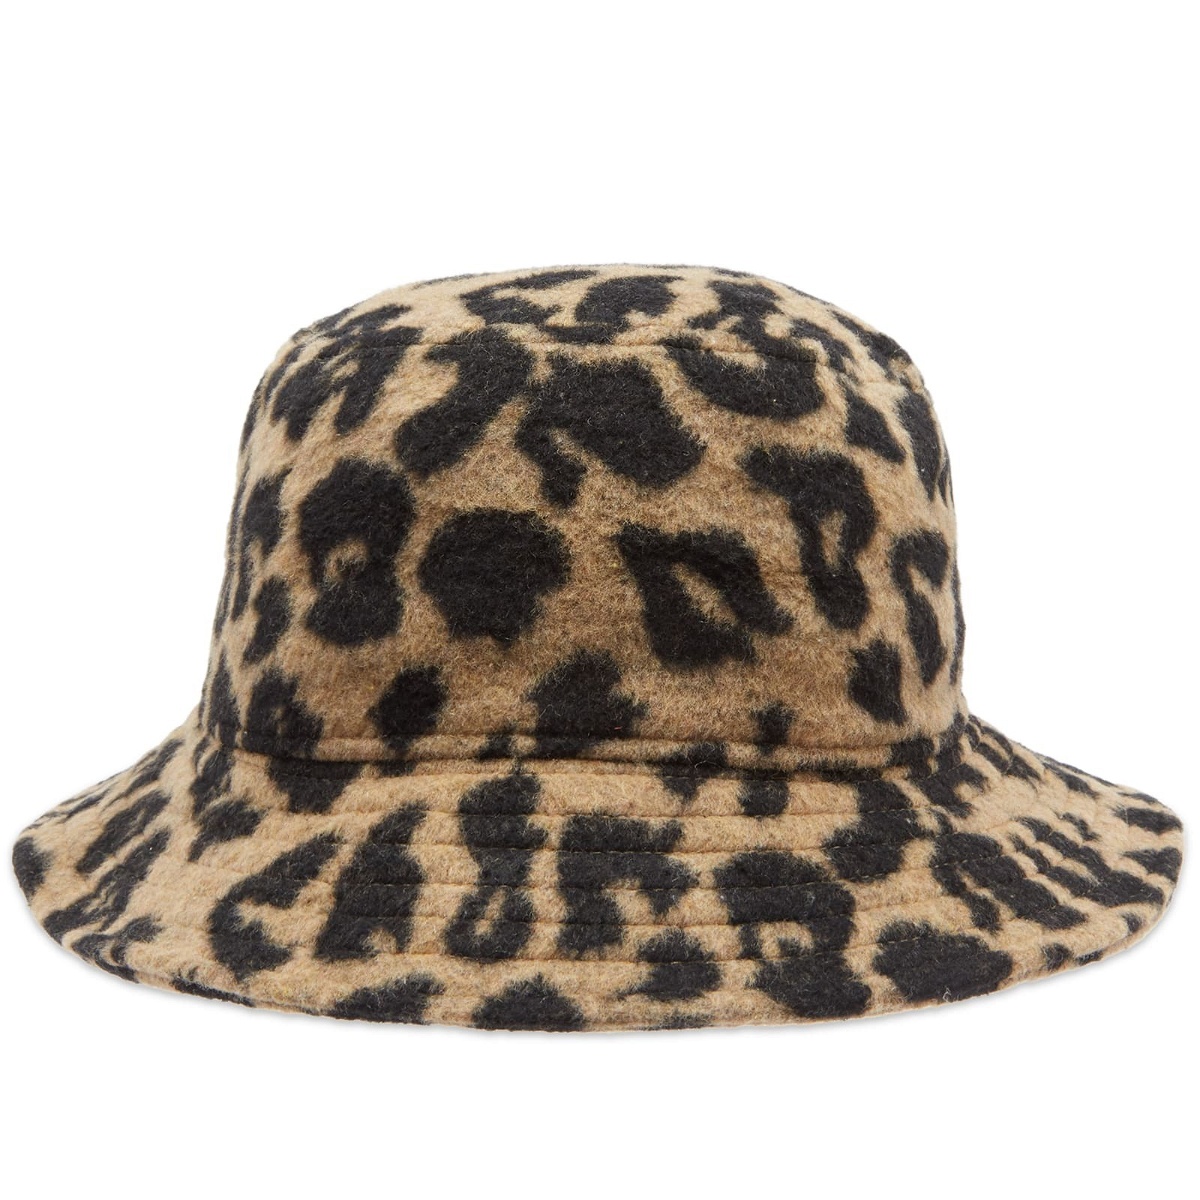 leopard 49ers hat